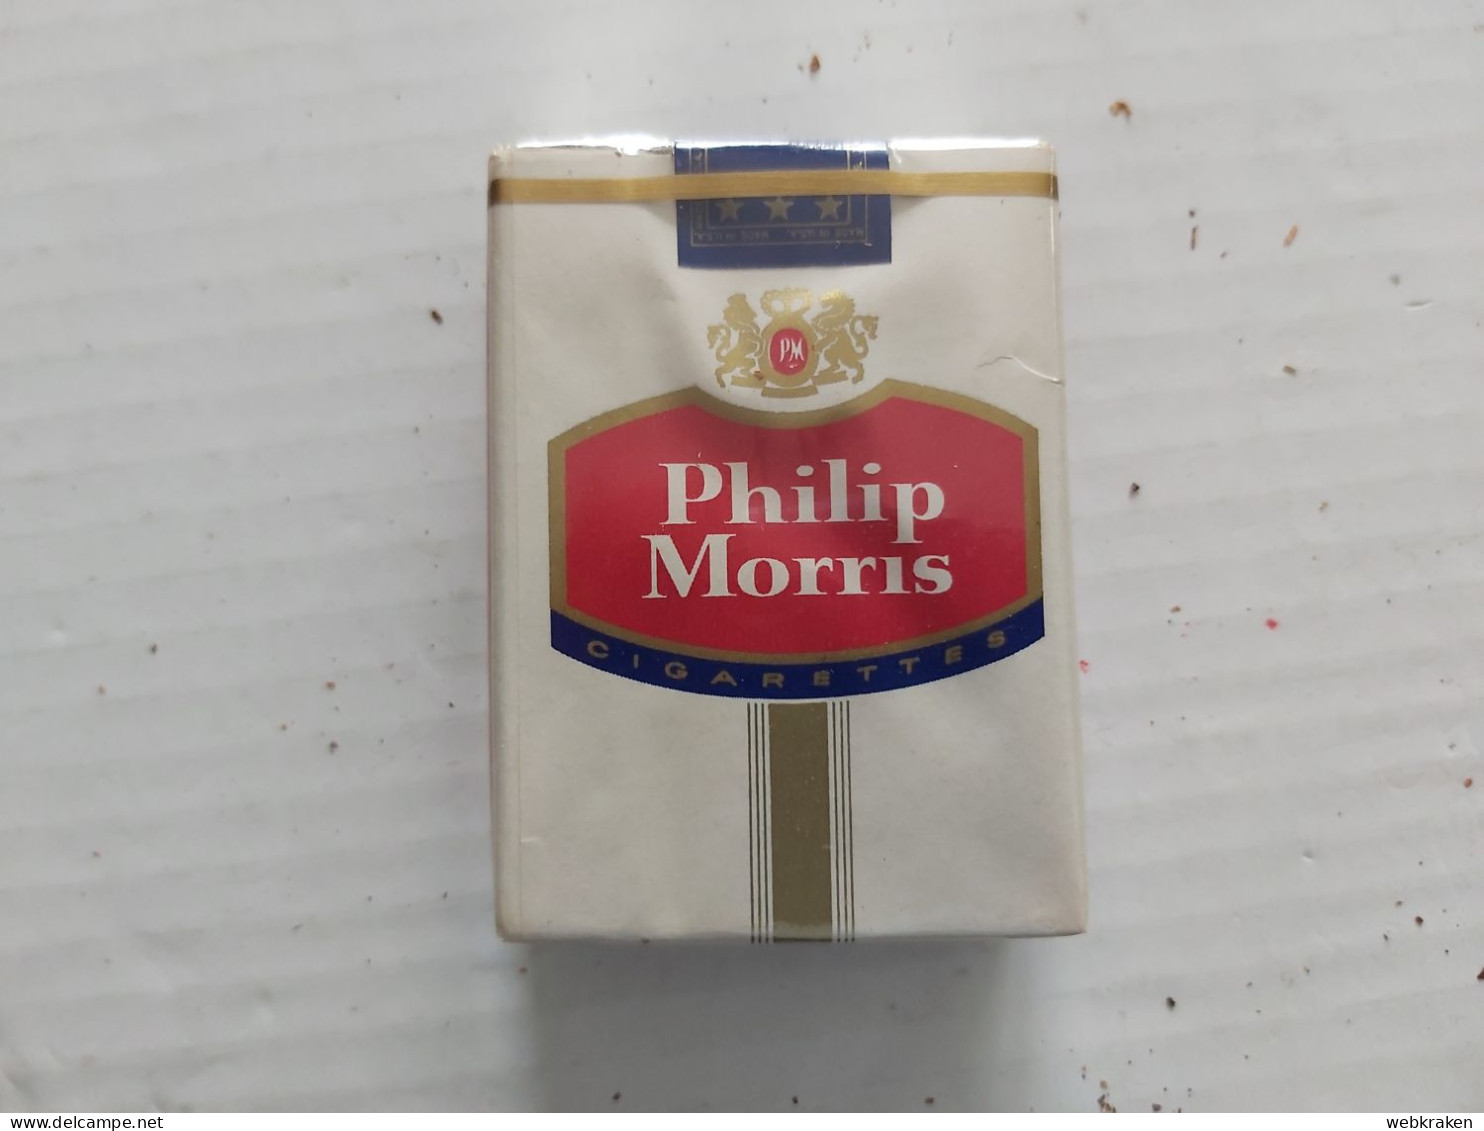 PACCHETTO SIGARETTE PIENO TABACCO FUMO TABACS WITH ORIGINAL CIGARETTES TOBACCO MARCA PHILIP MORRIS U.S.A. CON SIGARETTE - Cigarette Holders